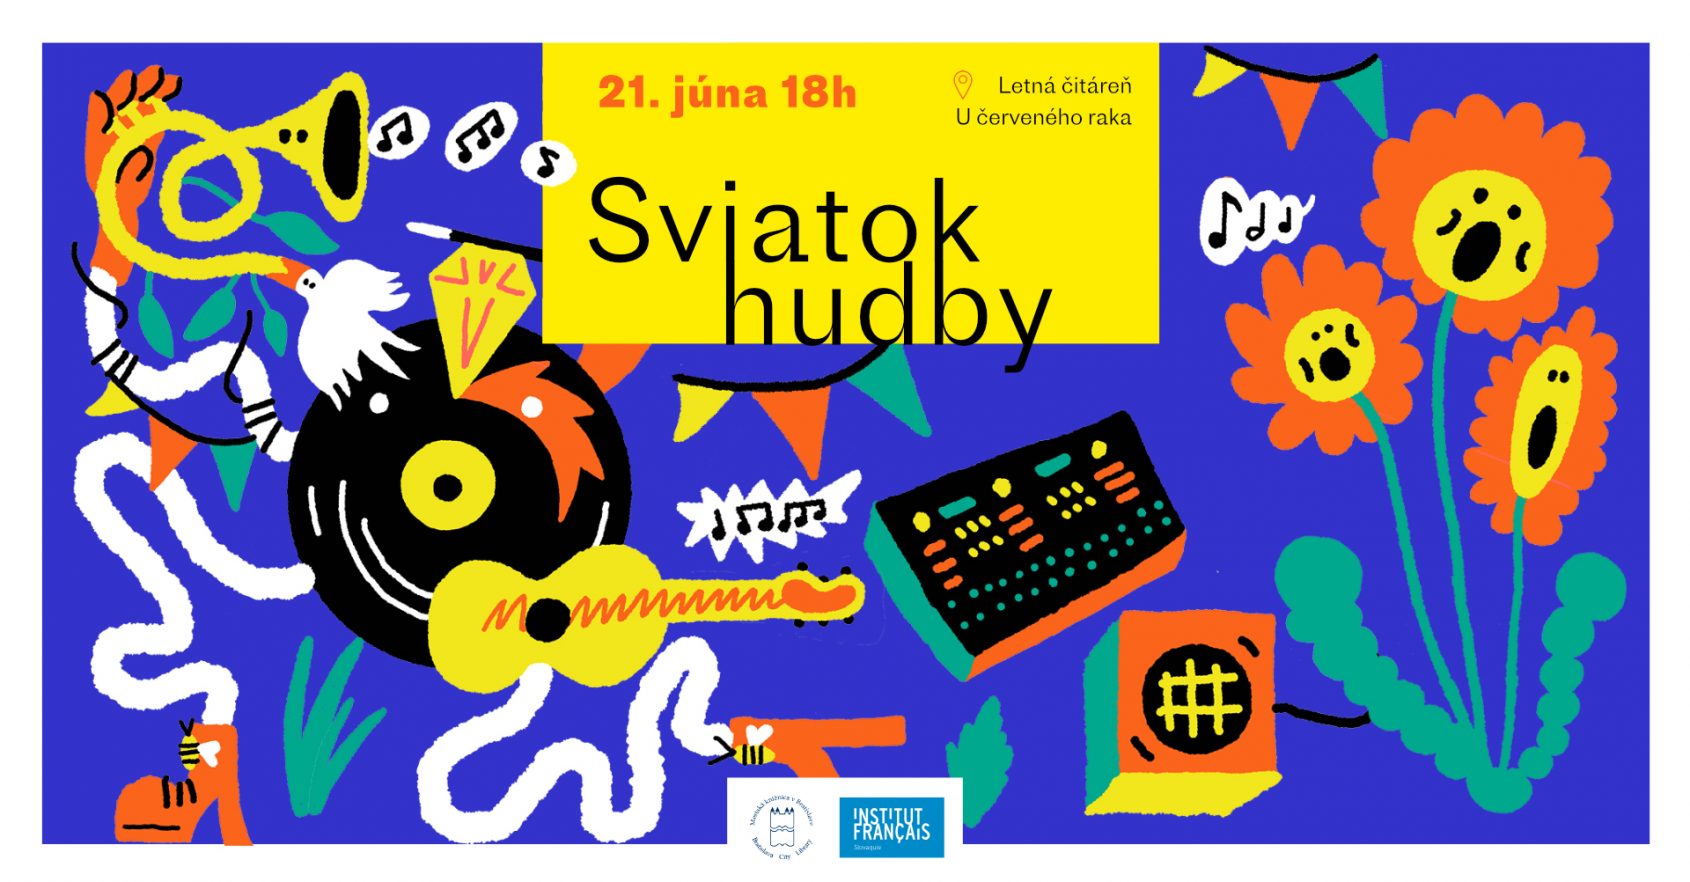 Sviatok hudby 21. júna v Bratislave